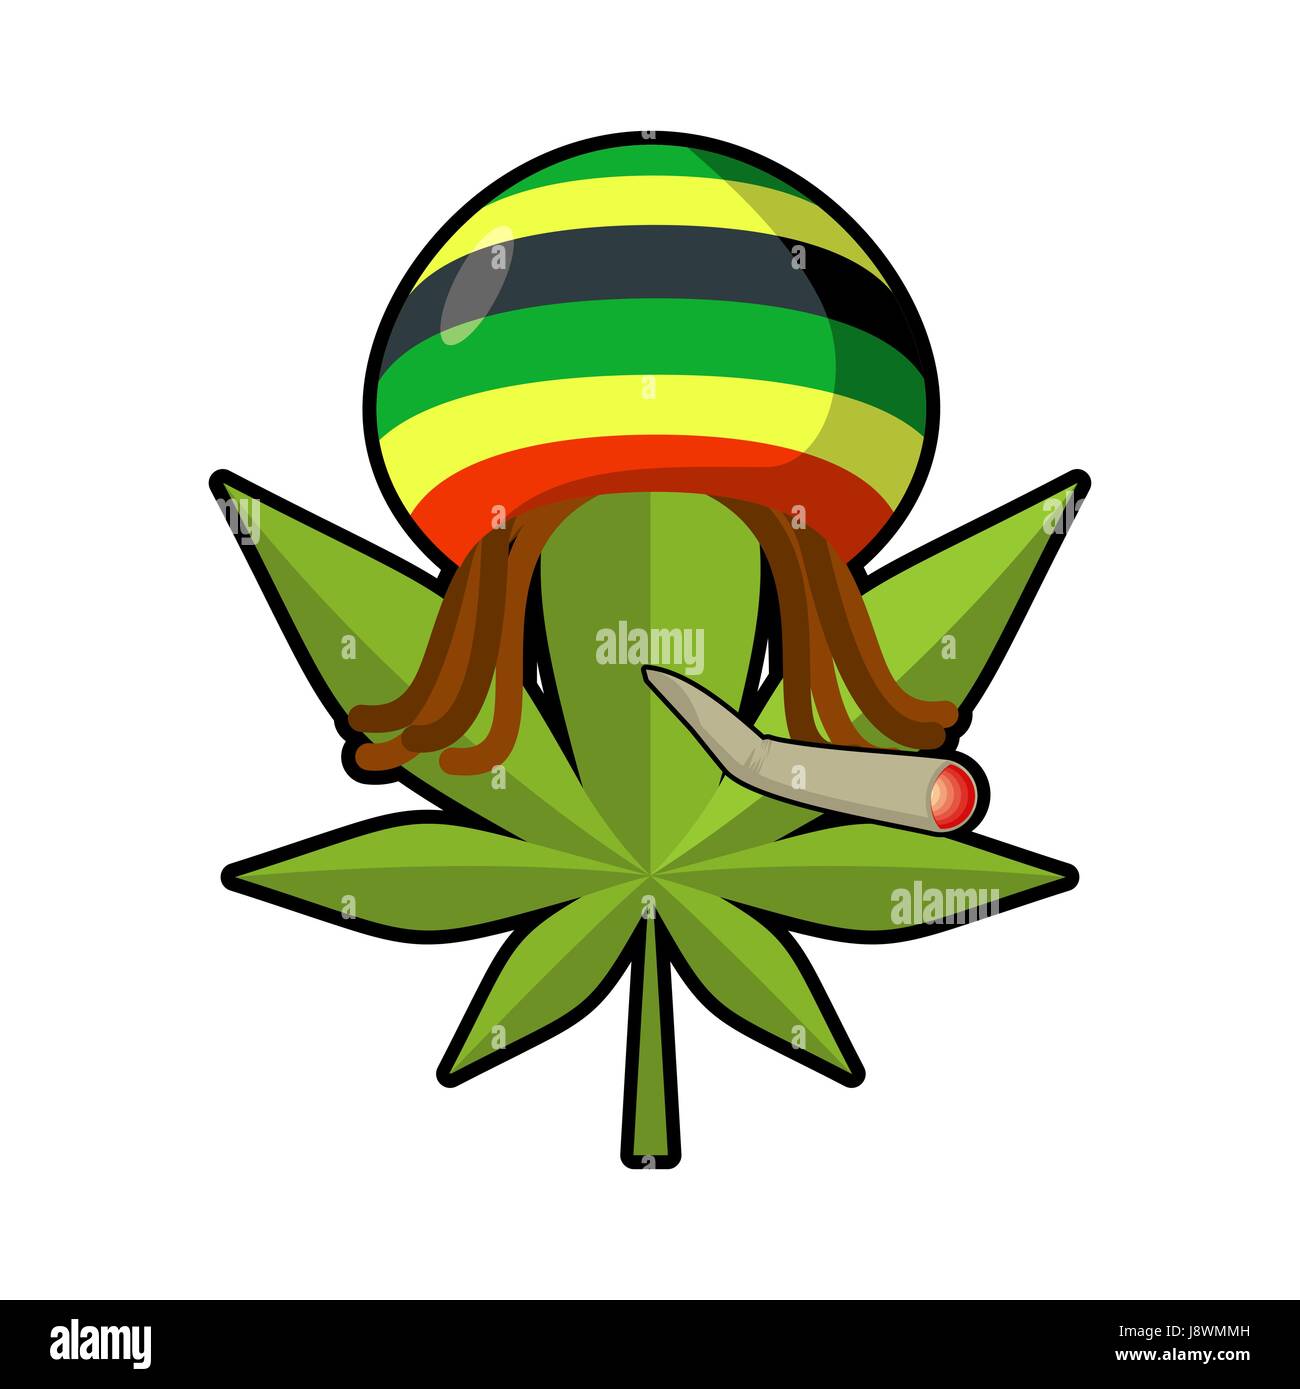 Blatt-Marihuana und Reggae-Cap mit Dreadlocks. Grünes Blatt Cannabis Rauchen Joints oder Spliff. Freaky-Emblem. Rastafaris Symbol. Rastaman Zeichen Stock Vektor